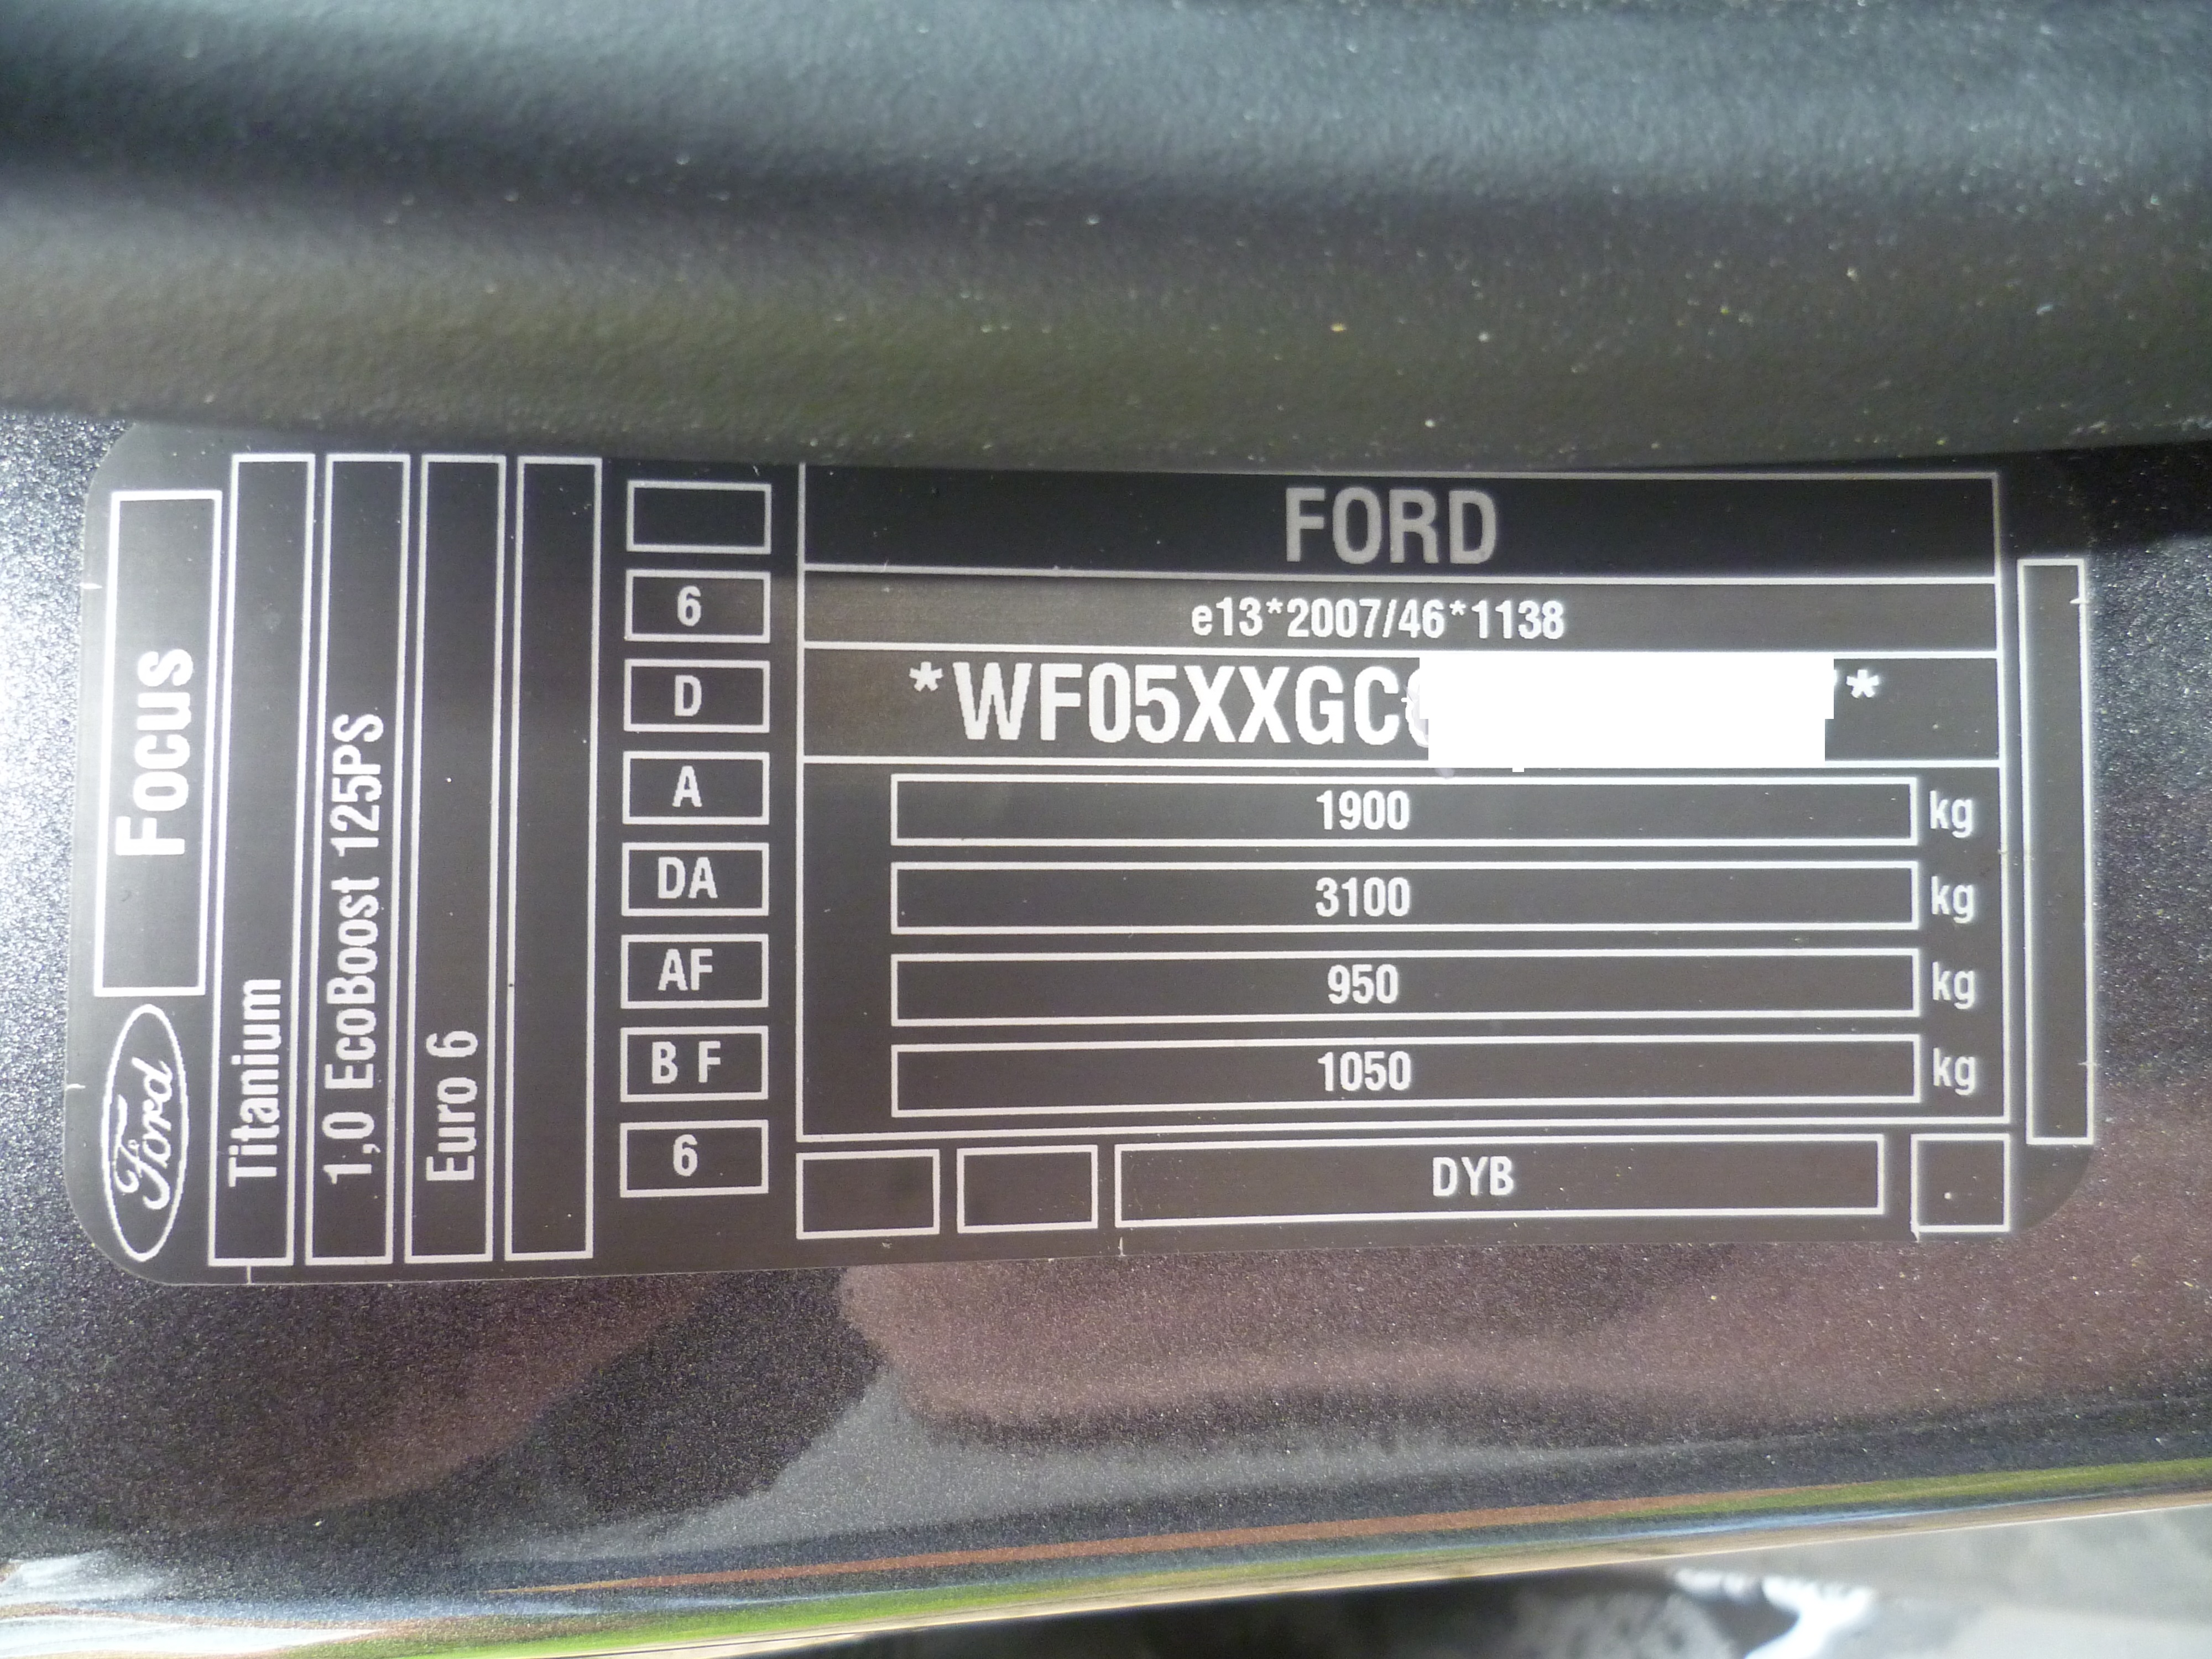 Форд фокус где код краски. Номер краски Форд фокус 3. 7м5а-1532-АА код краски Форд фокус 2 Рестайлинг седан. Код краски f3 Форд фокус. Код краски Форд фокус 2kv.